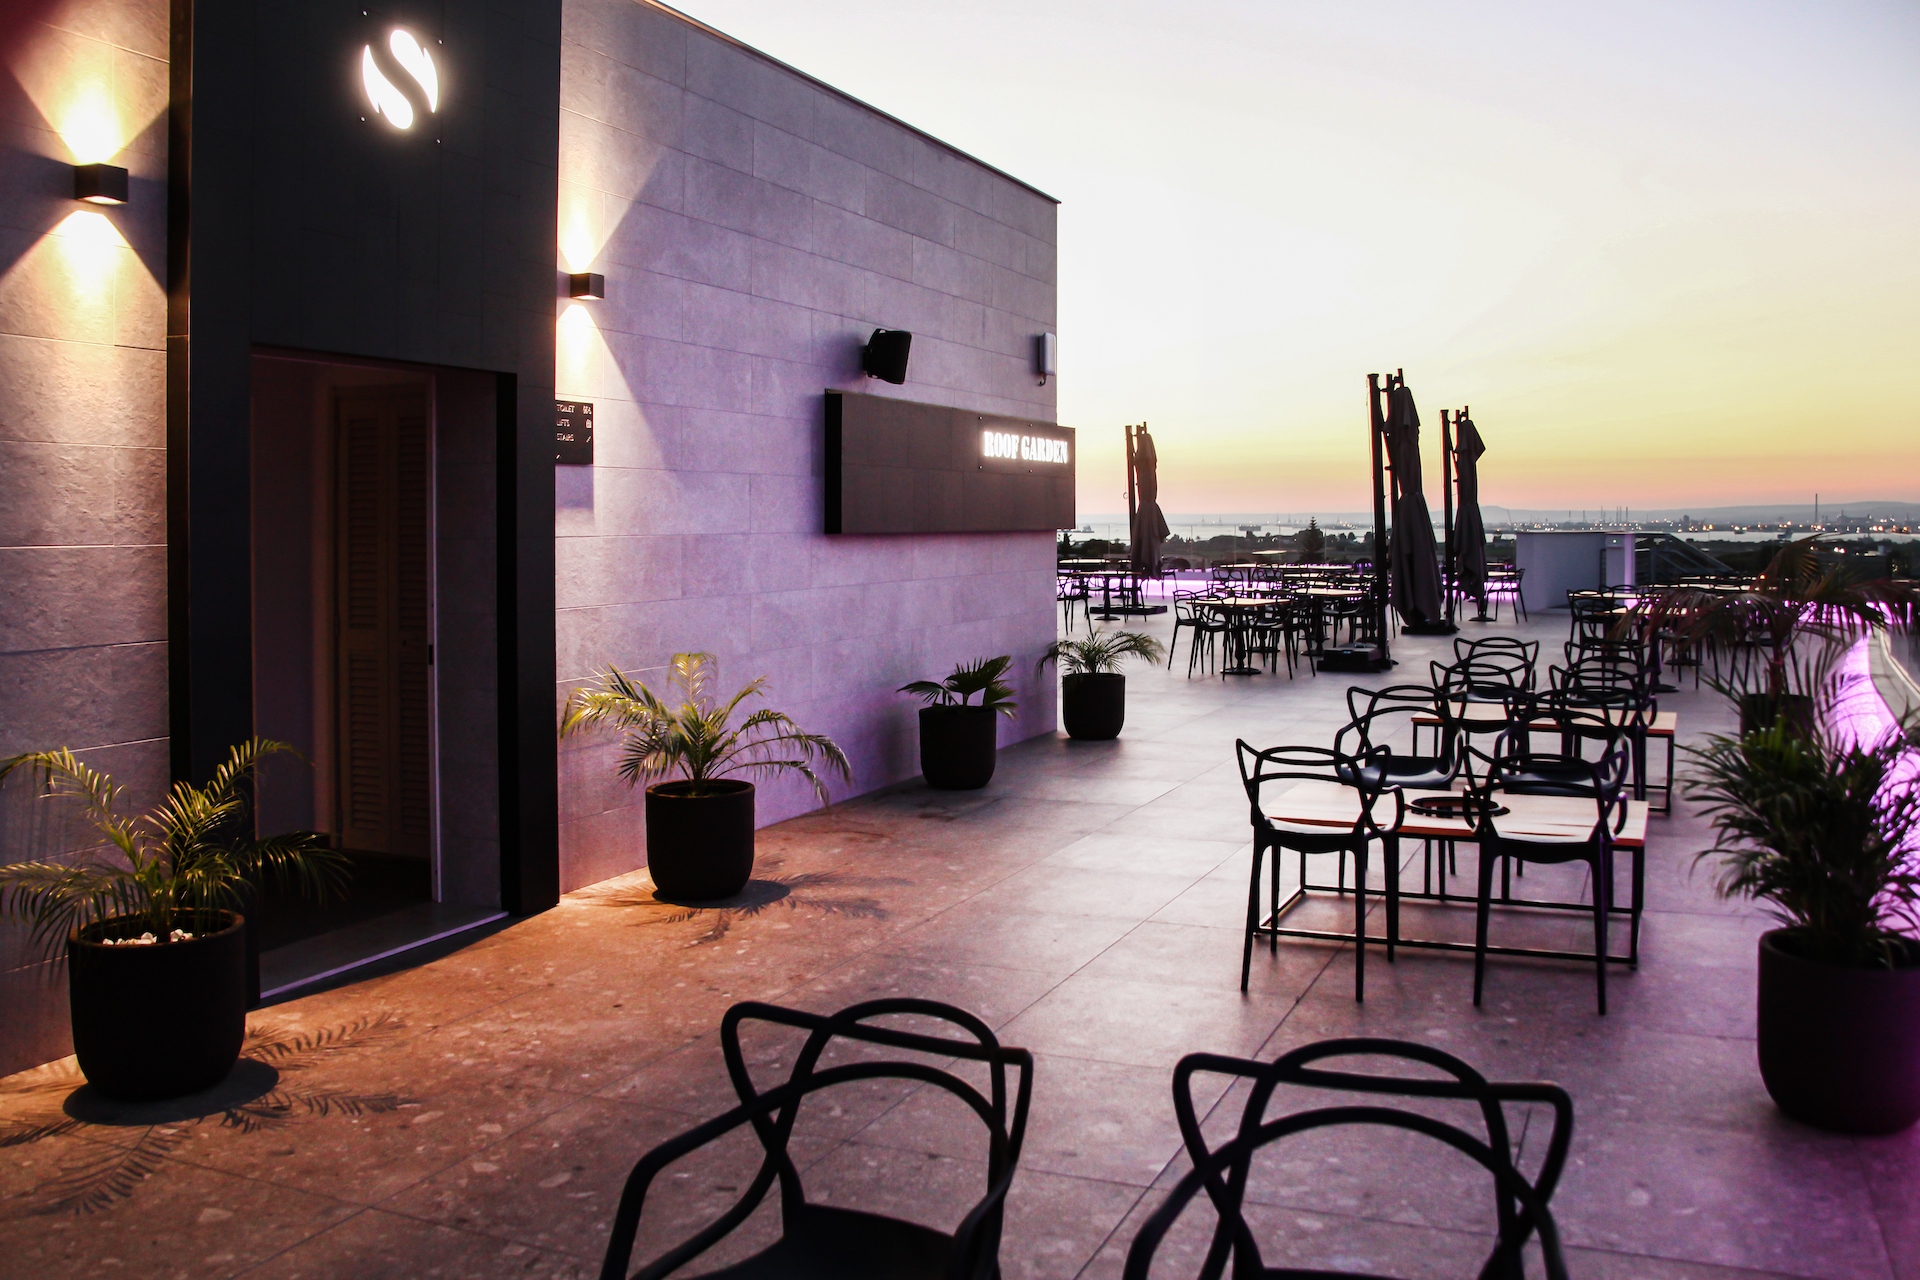 terrazza rooftop arredo di lusso contract per Hotel Salina di Taranto realizzato dal Gruppo Rodi